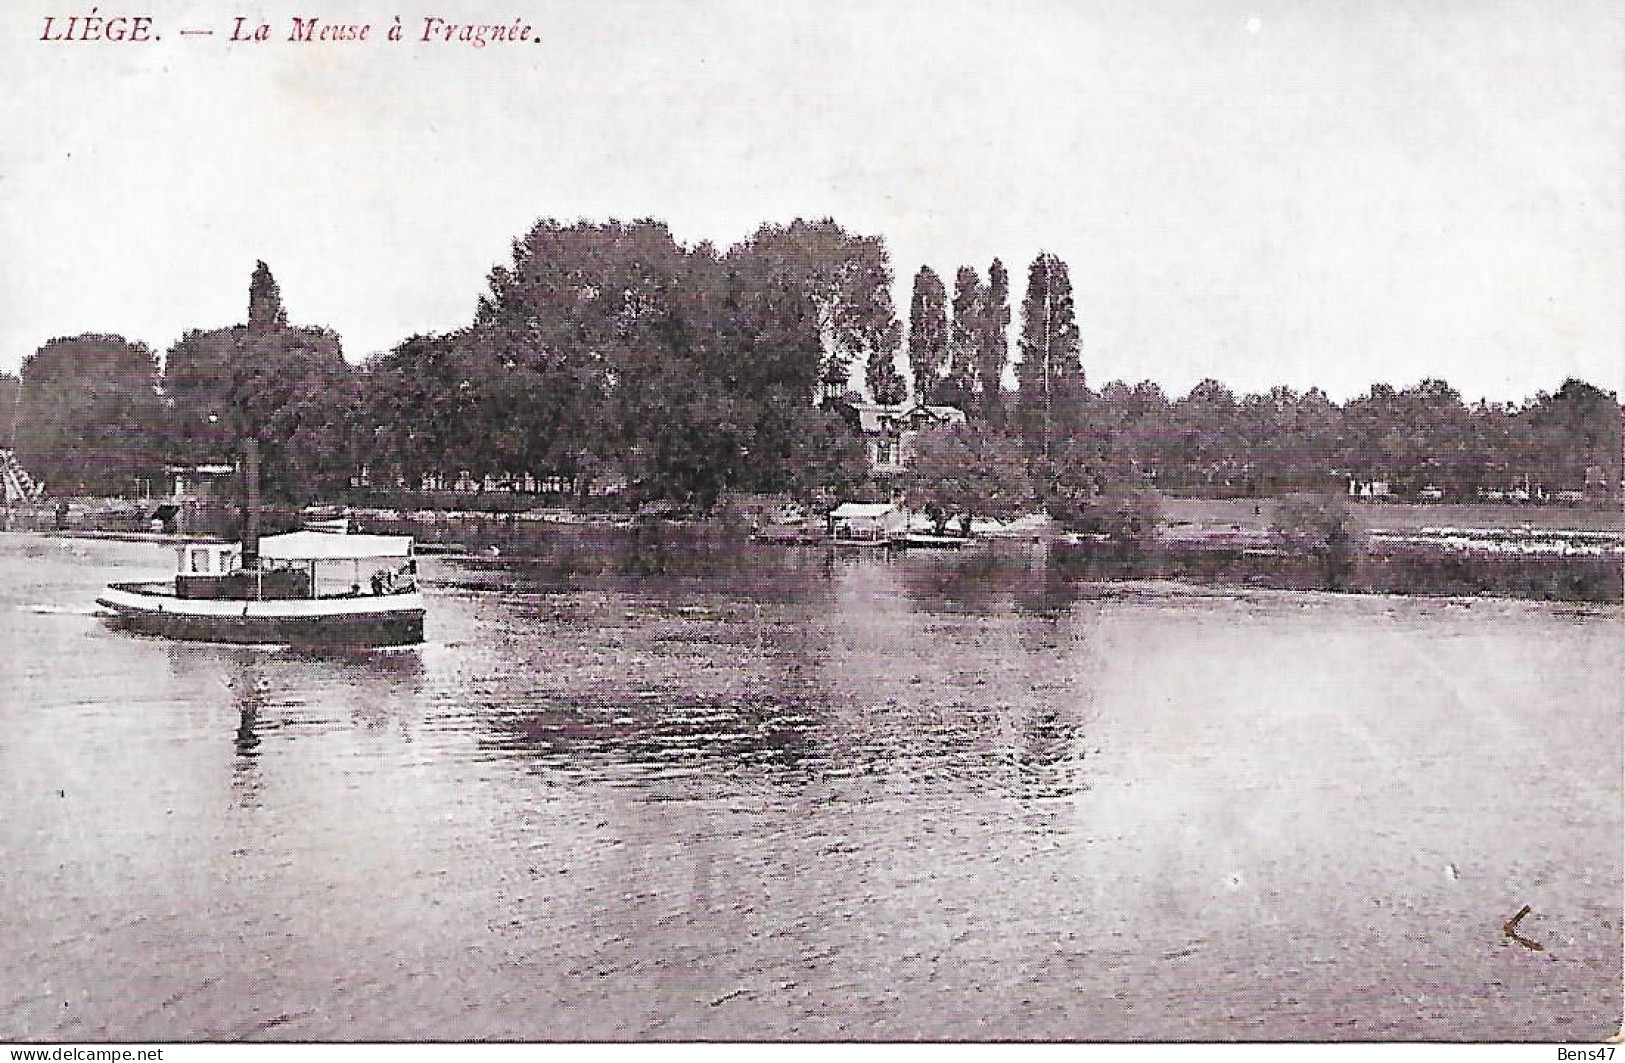 Liege La Meuse à Fragnée - Liege